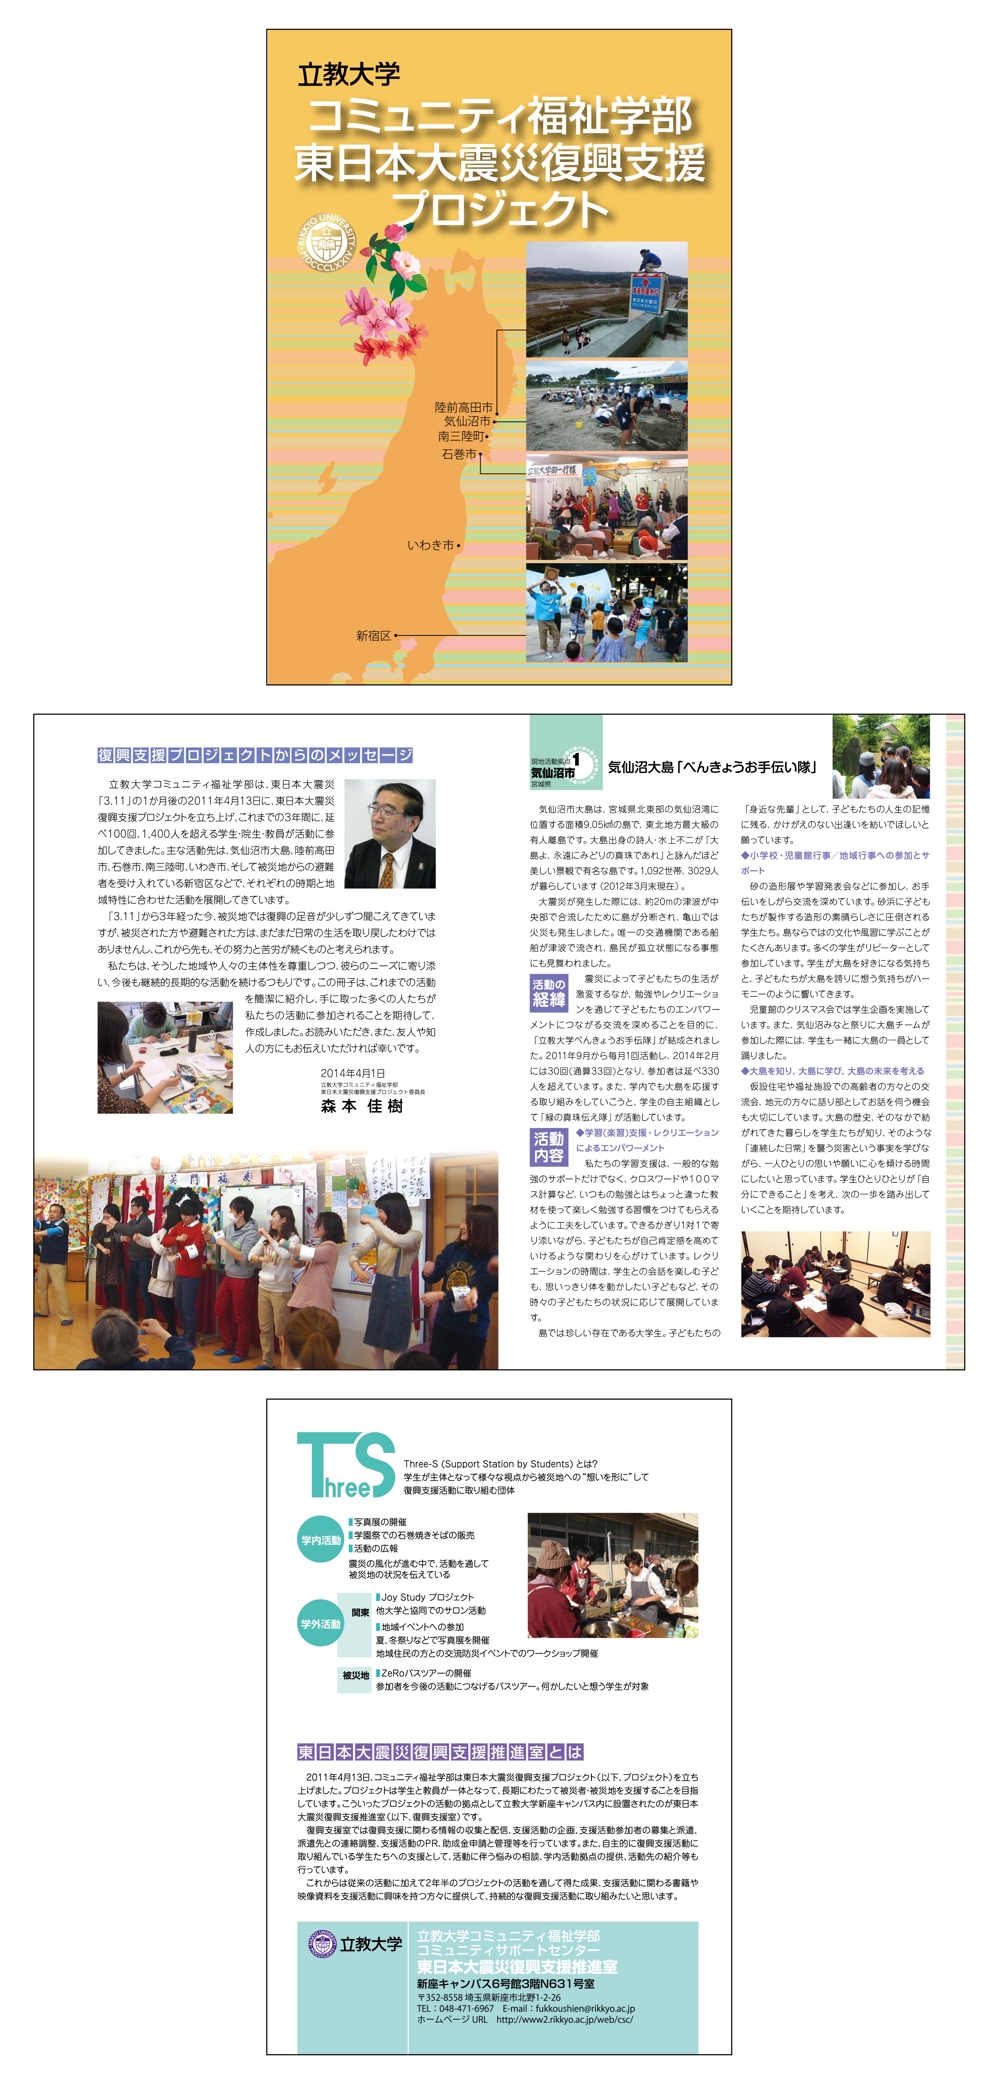 コミュニティ福祉学部東日本大震災復興プロジェクト